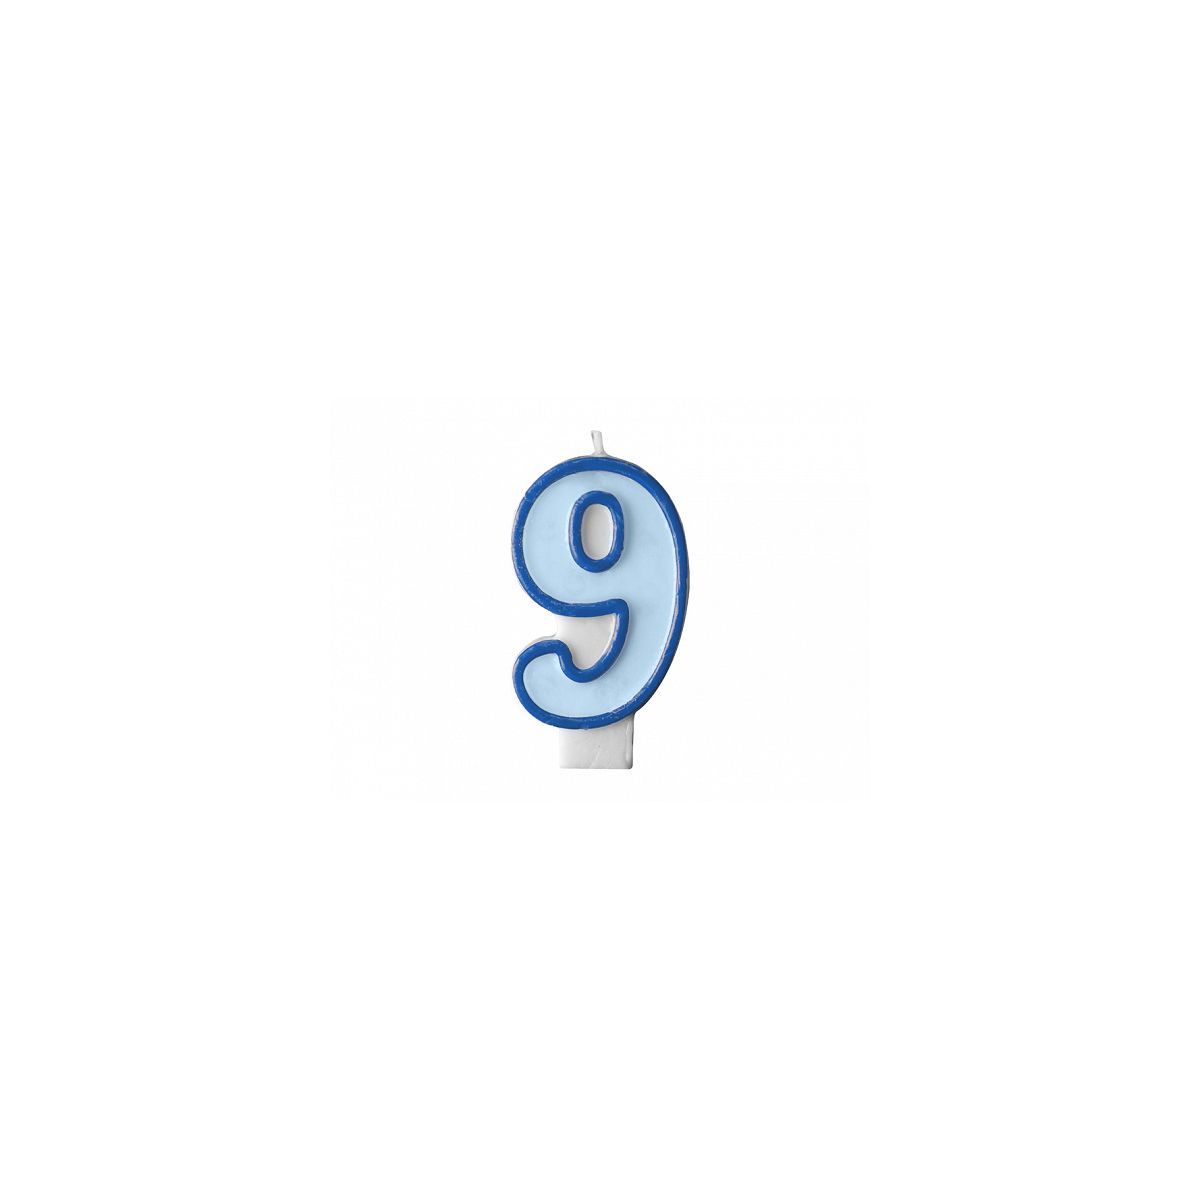 Świeczka urodzinowa Cyferka 9 w kolorze niebieskim 7 centymetrów Partydeco (SCU1-9-001)